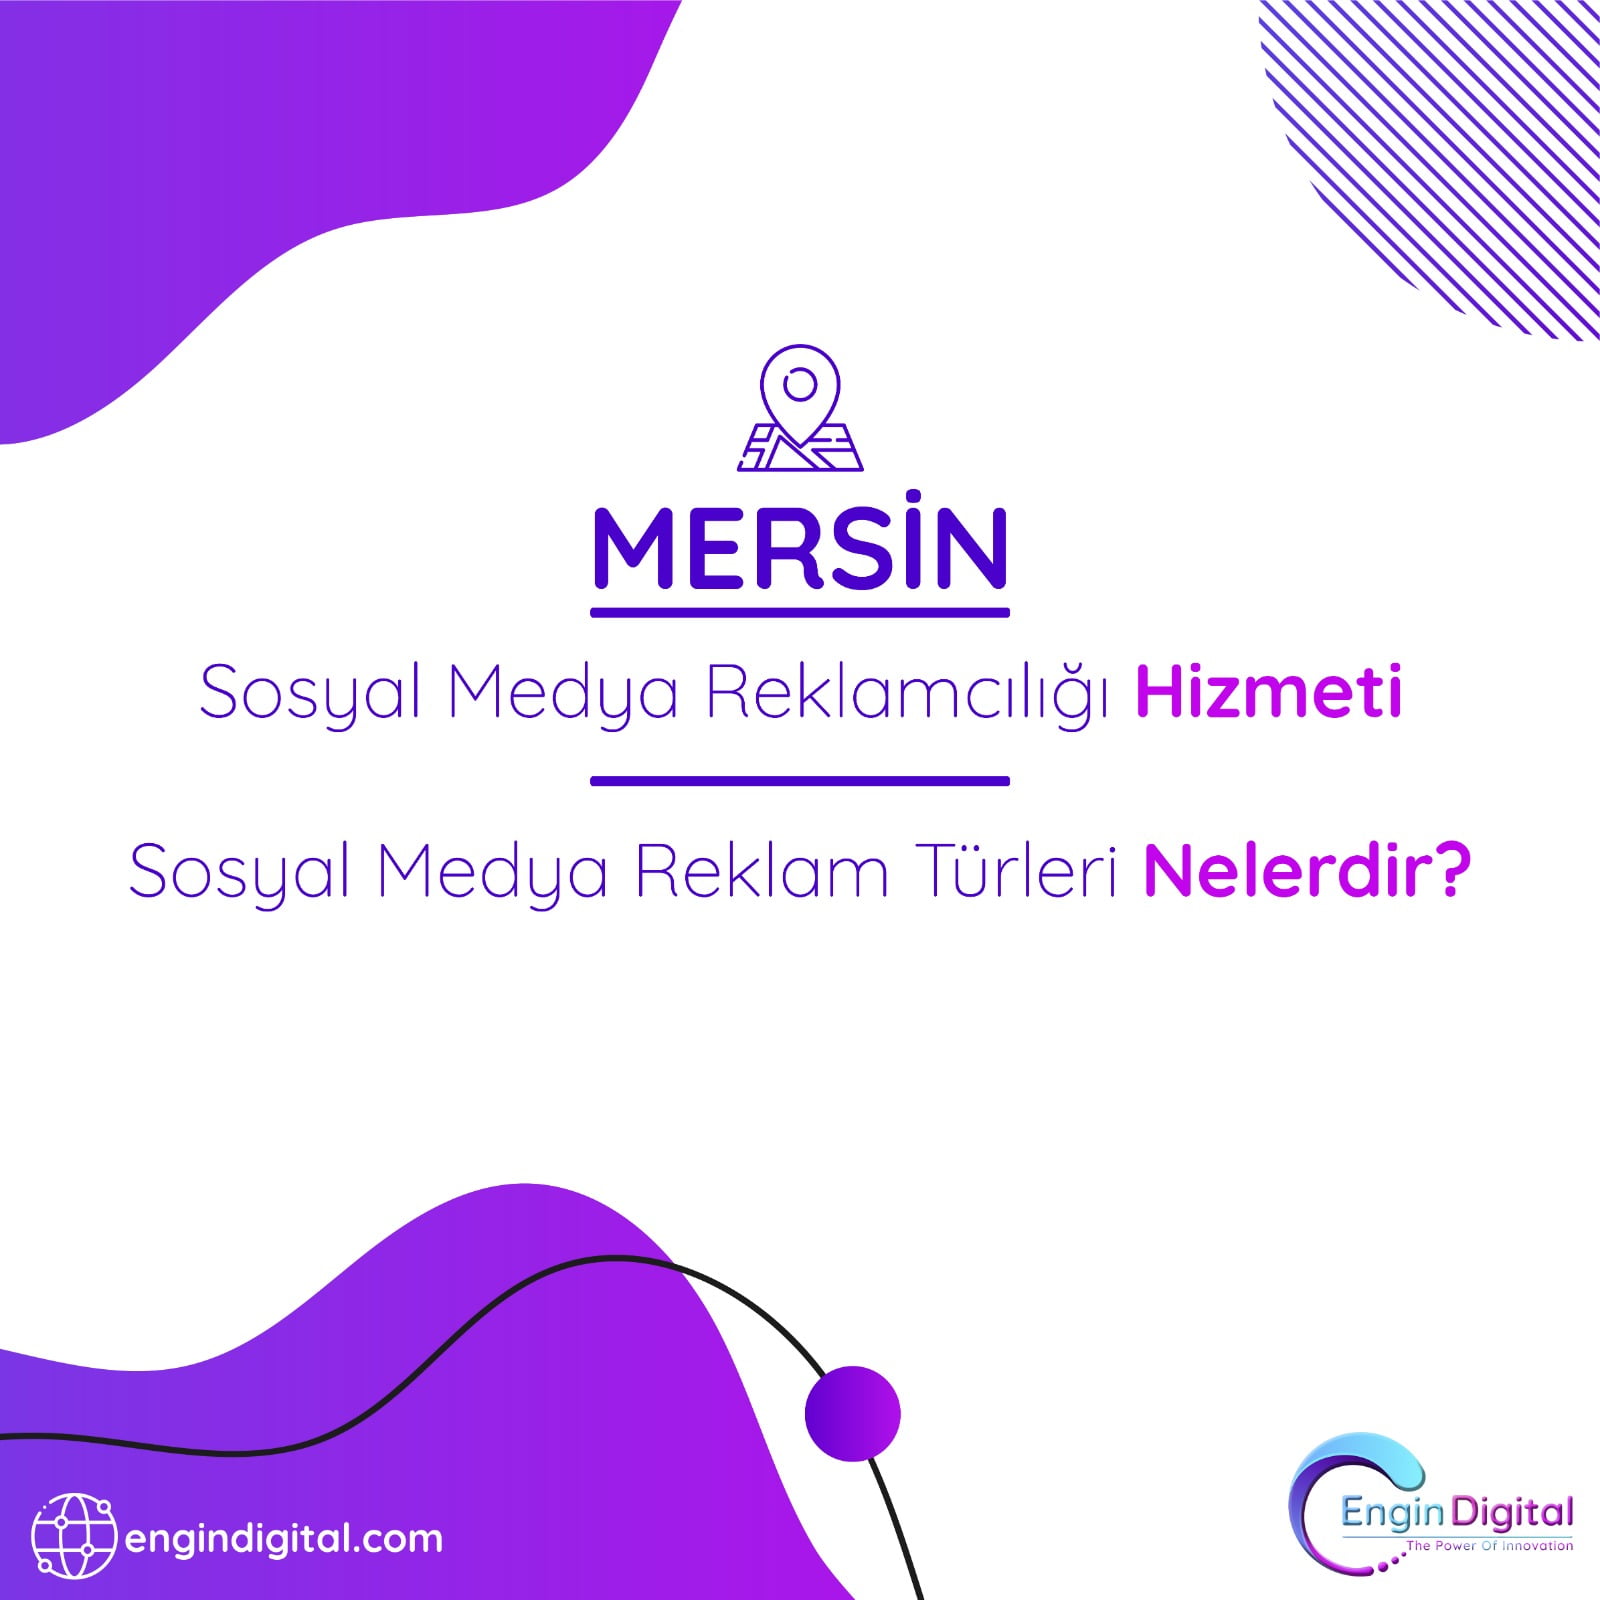 Mersin Sosyal Medya Reklamcılığı Hizmeti Sosyal Medya Reklam Türleri Nelerdir - Engin Digital